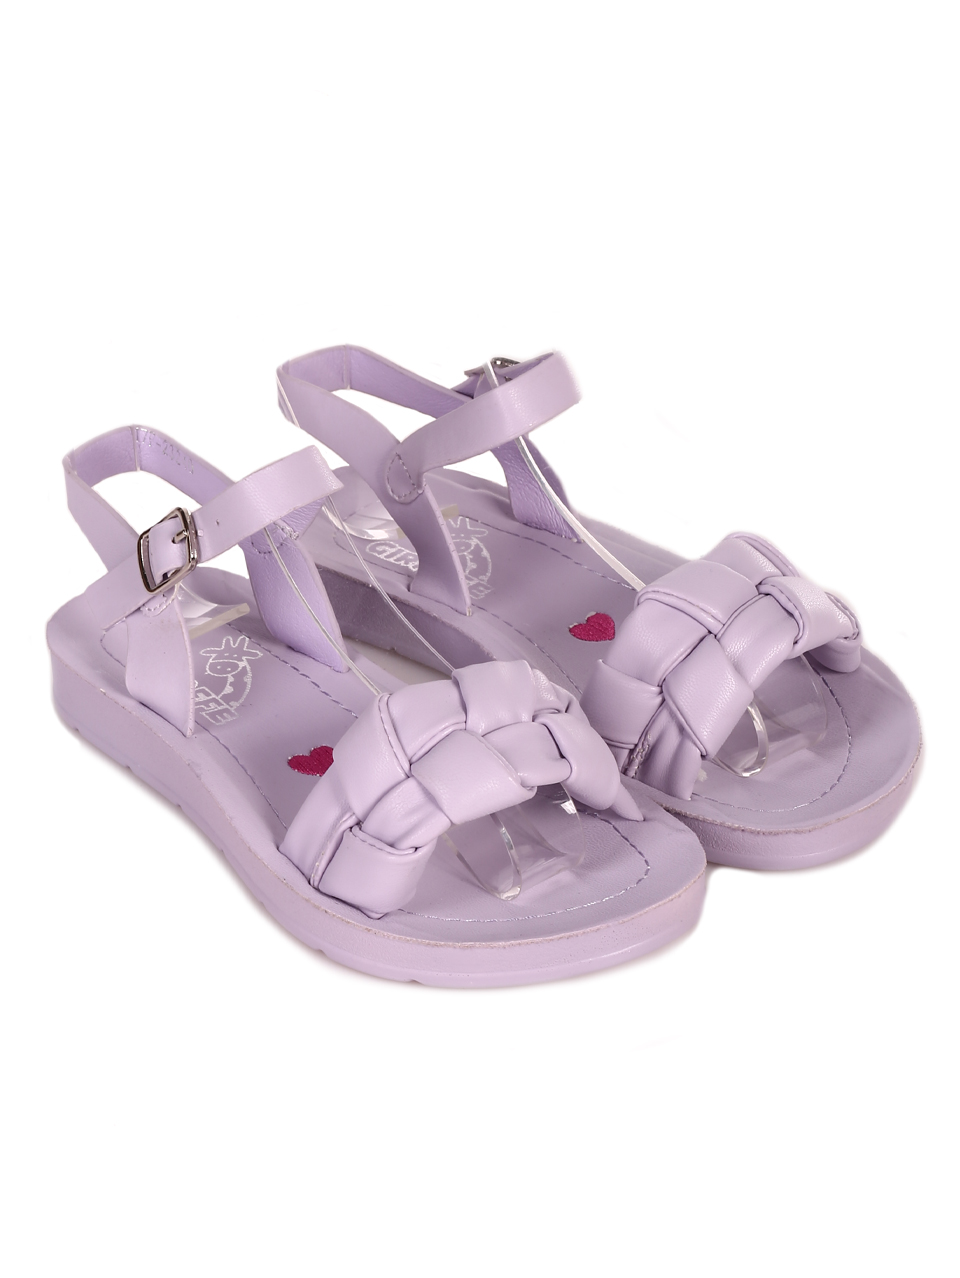 Ежедневни детски комфортни сандали в лилаво 17F-23240 purple